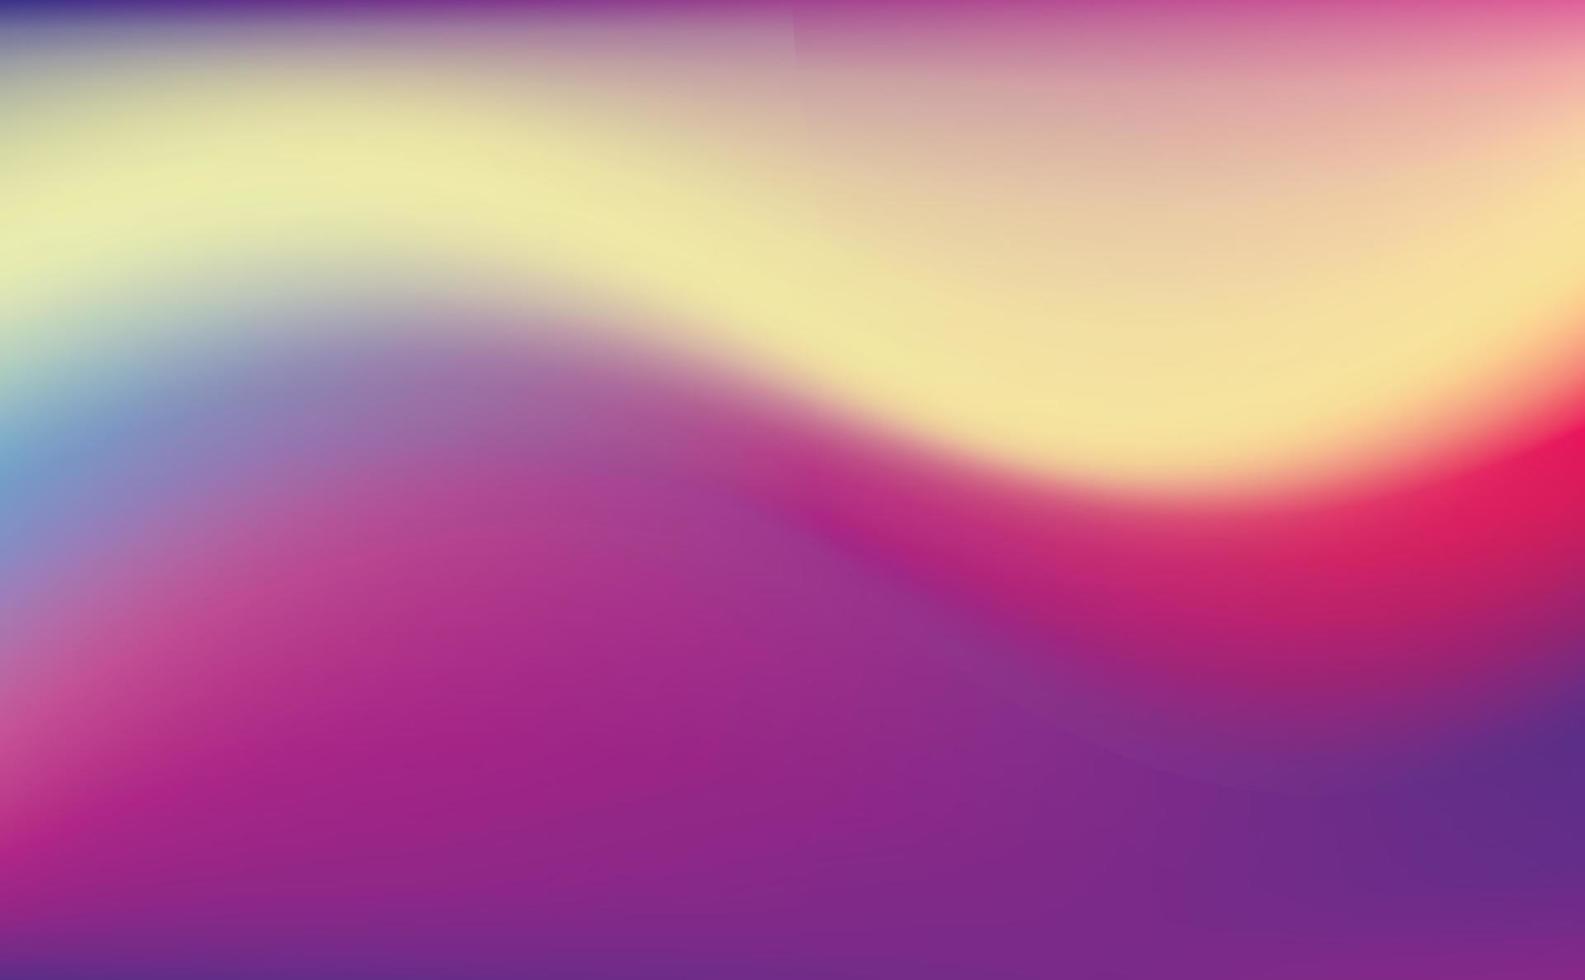 sfondo sfumato astratto con una combinazione di colori blu, giallo, rosa, viola e rosso, a forma di motivo a onde. copia spazio. illustrazione vettoriale